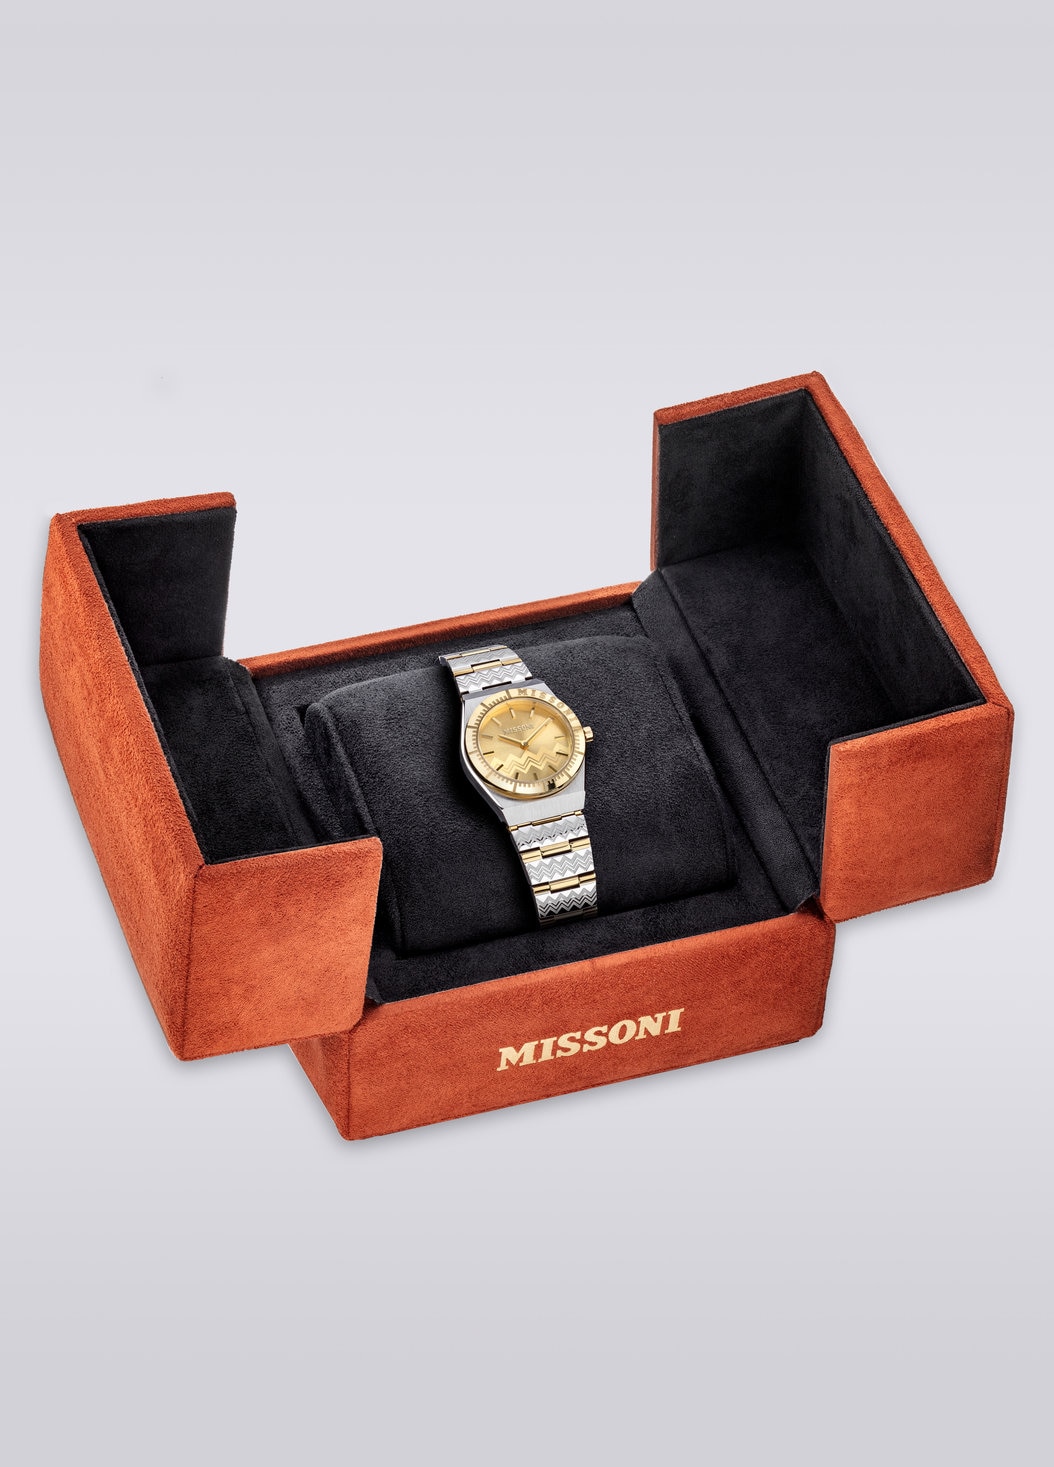 Missoni Milano 29 MM  case size watch, Multicoloured  - 8053147046167 - 4